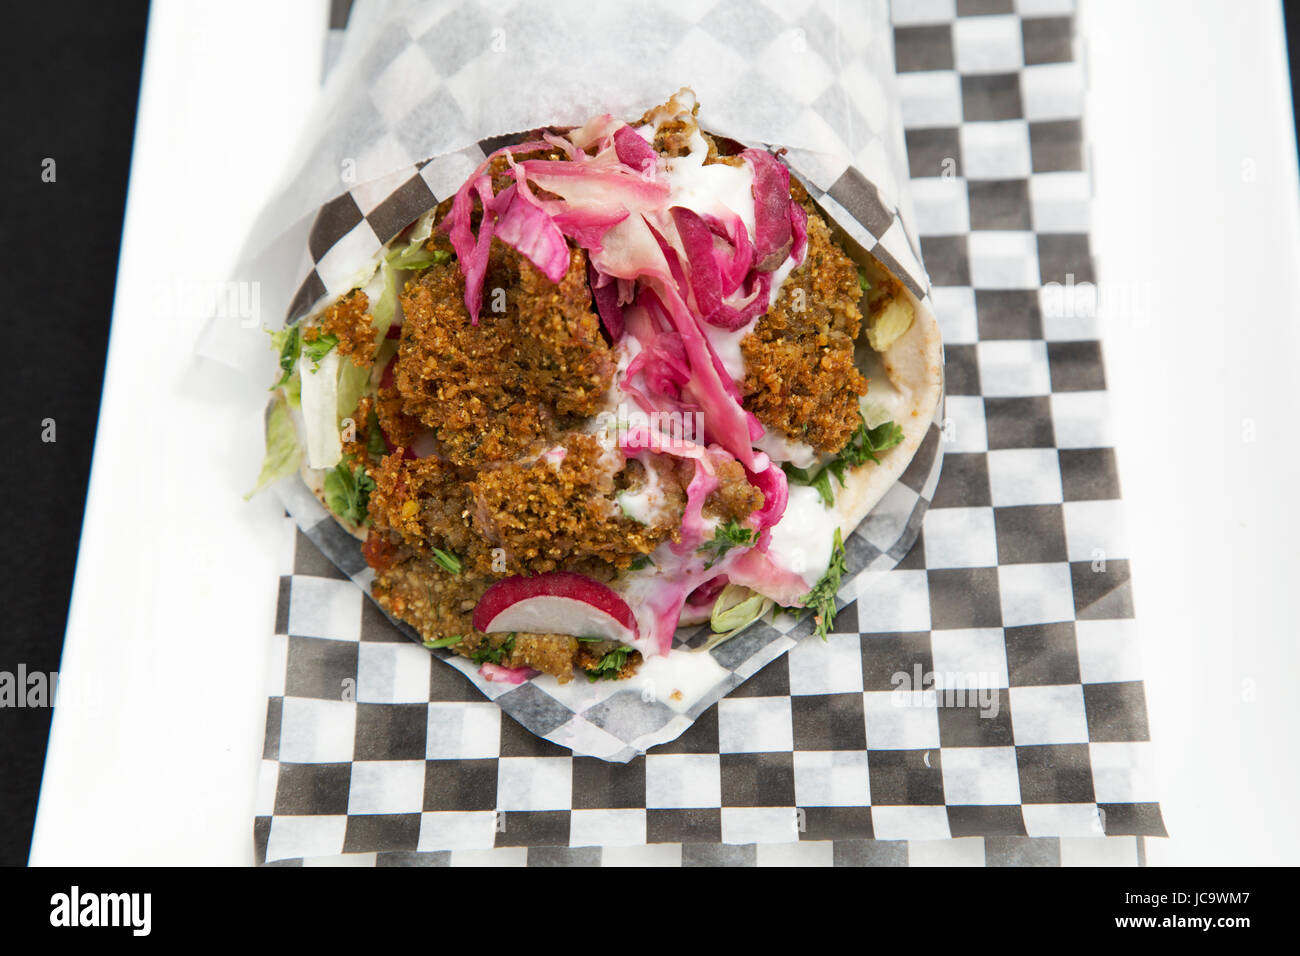 Un falafel wrap è servita a Calgary, Canada. Immigrazione e influenze globali significa una vasta varietà di cucine sono serviti nelle principali città. Foto Stock